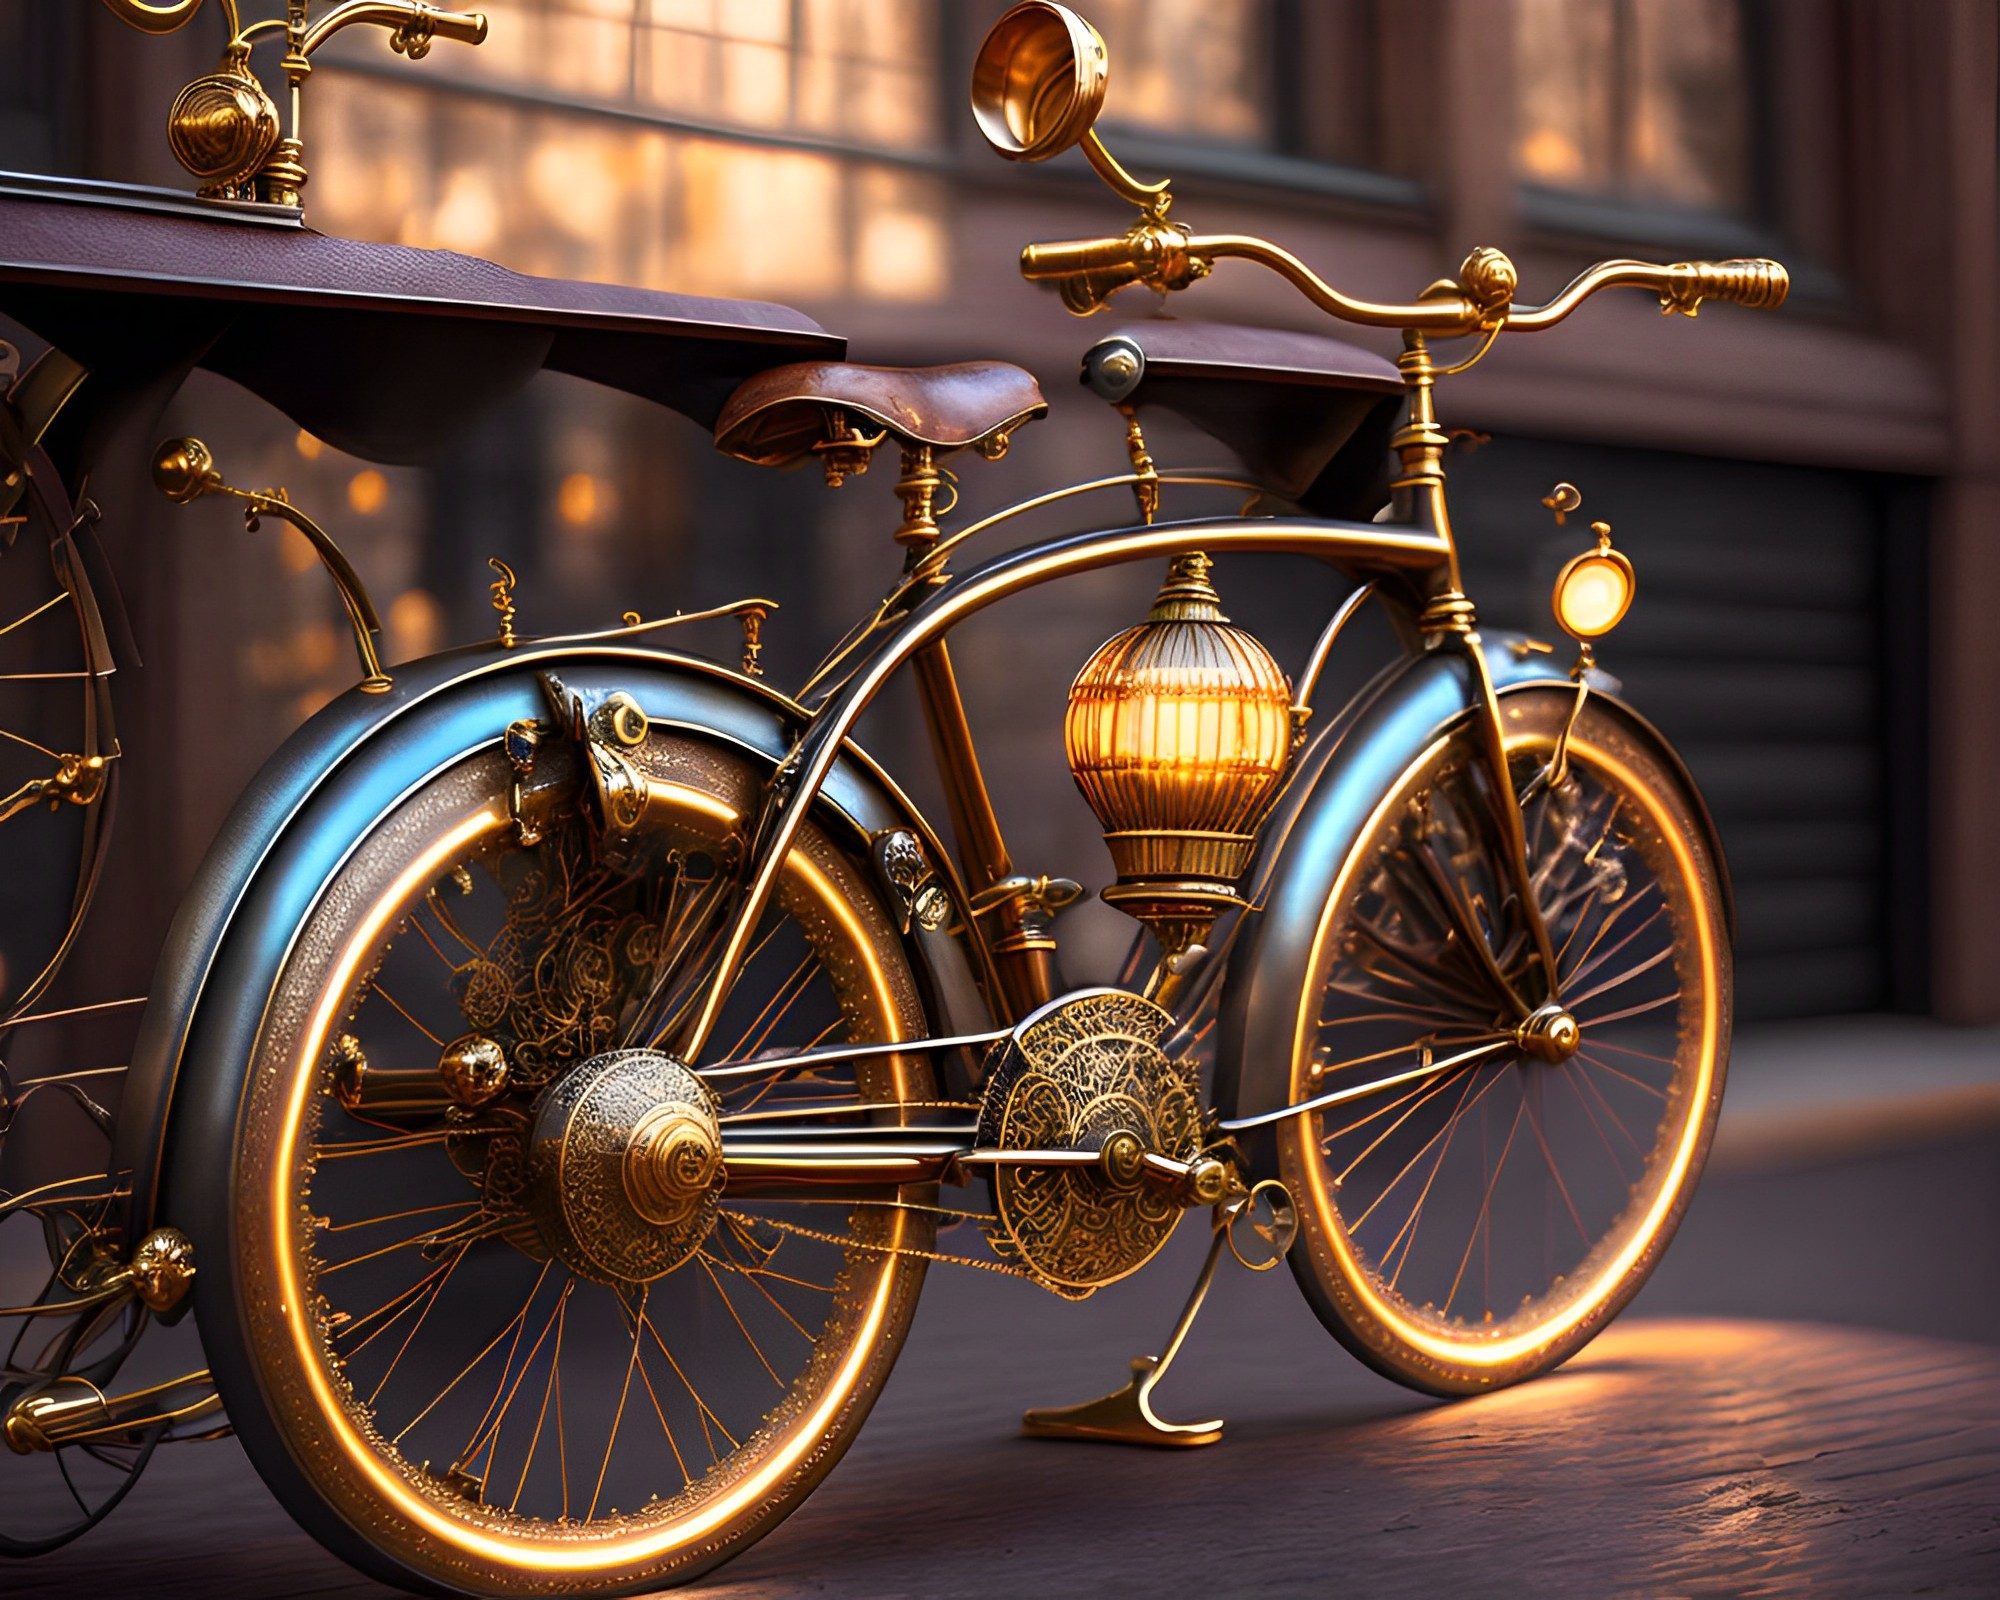 ・スチームパンク風のかっこいいゴールデン自転車と西洋の街並み